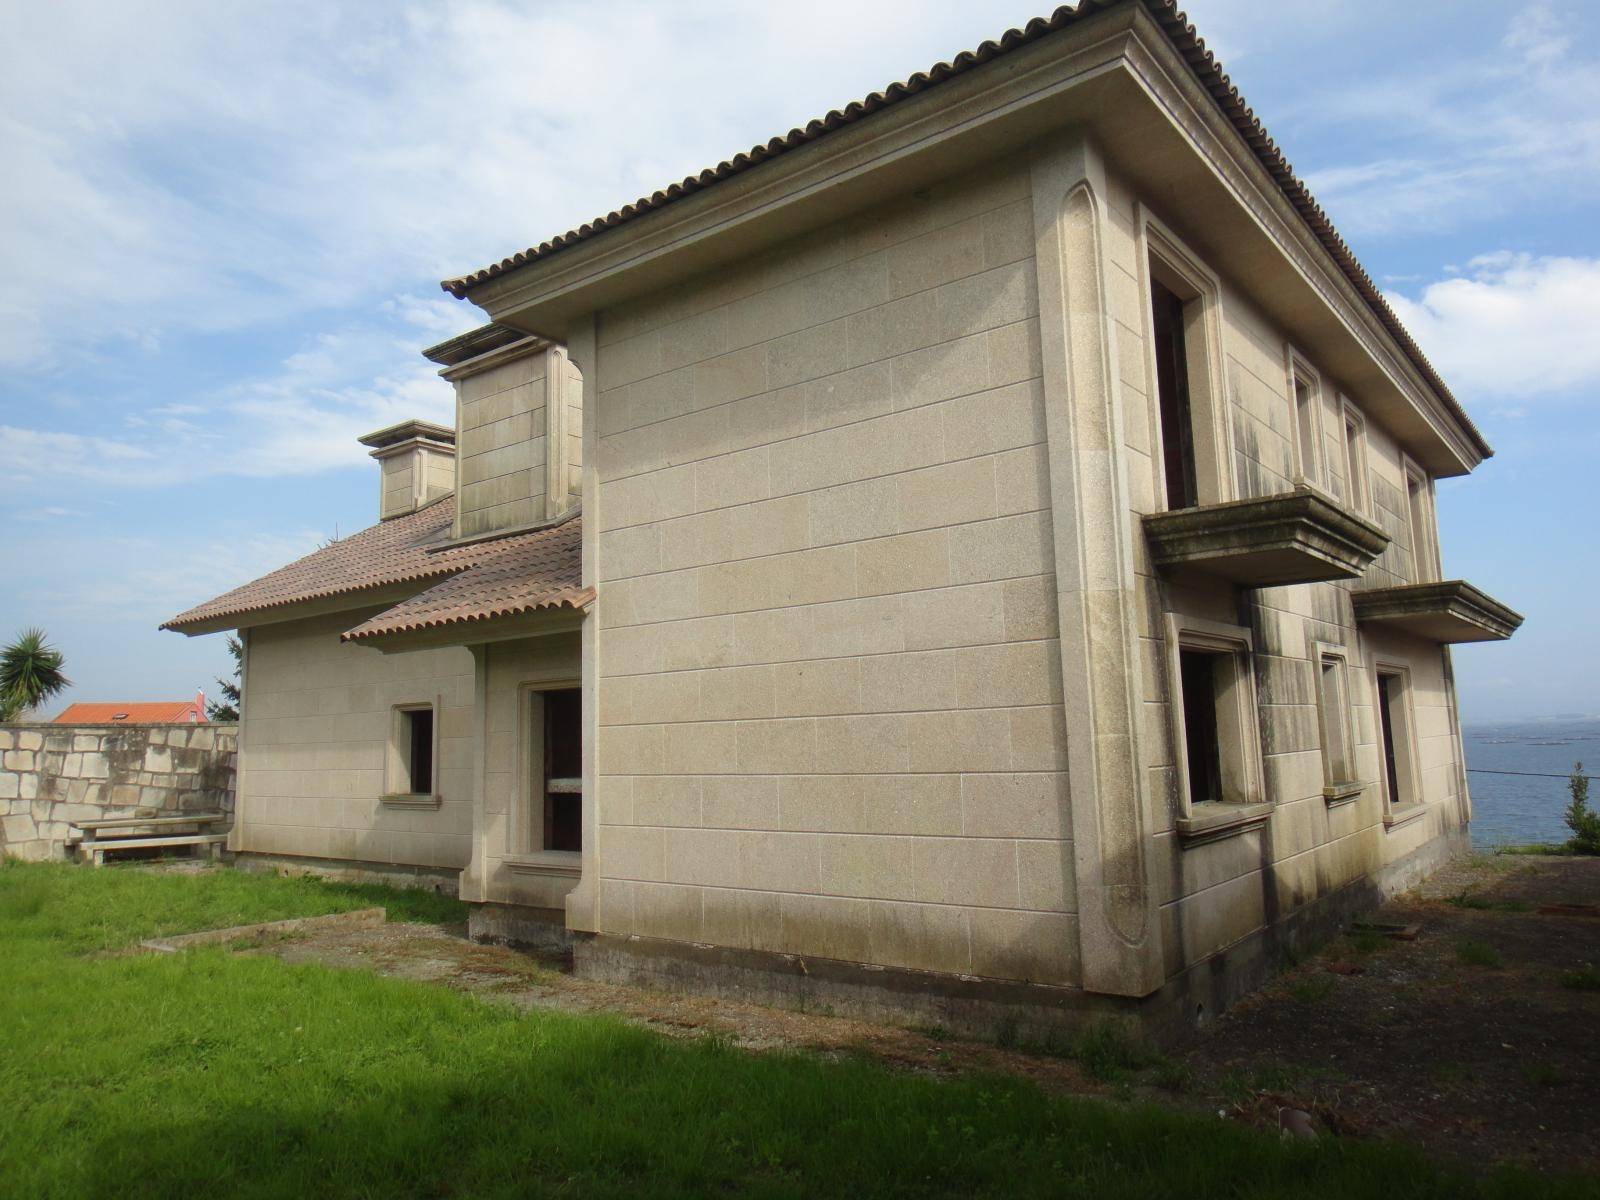 House for sale in A Pobra do Caramiñal